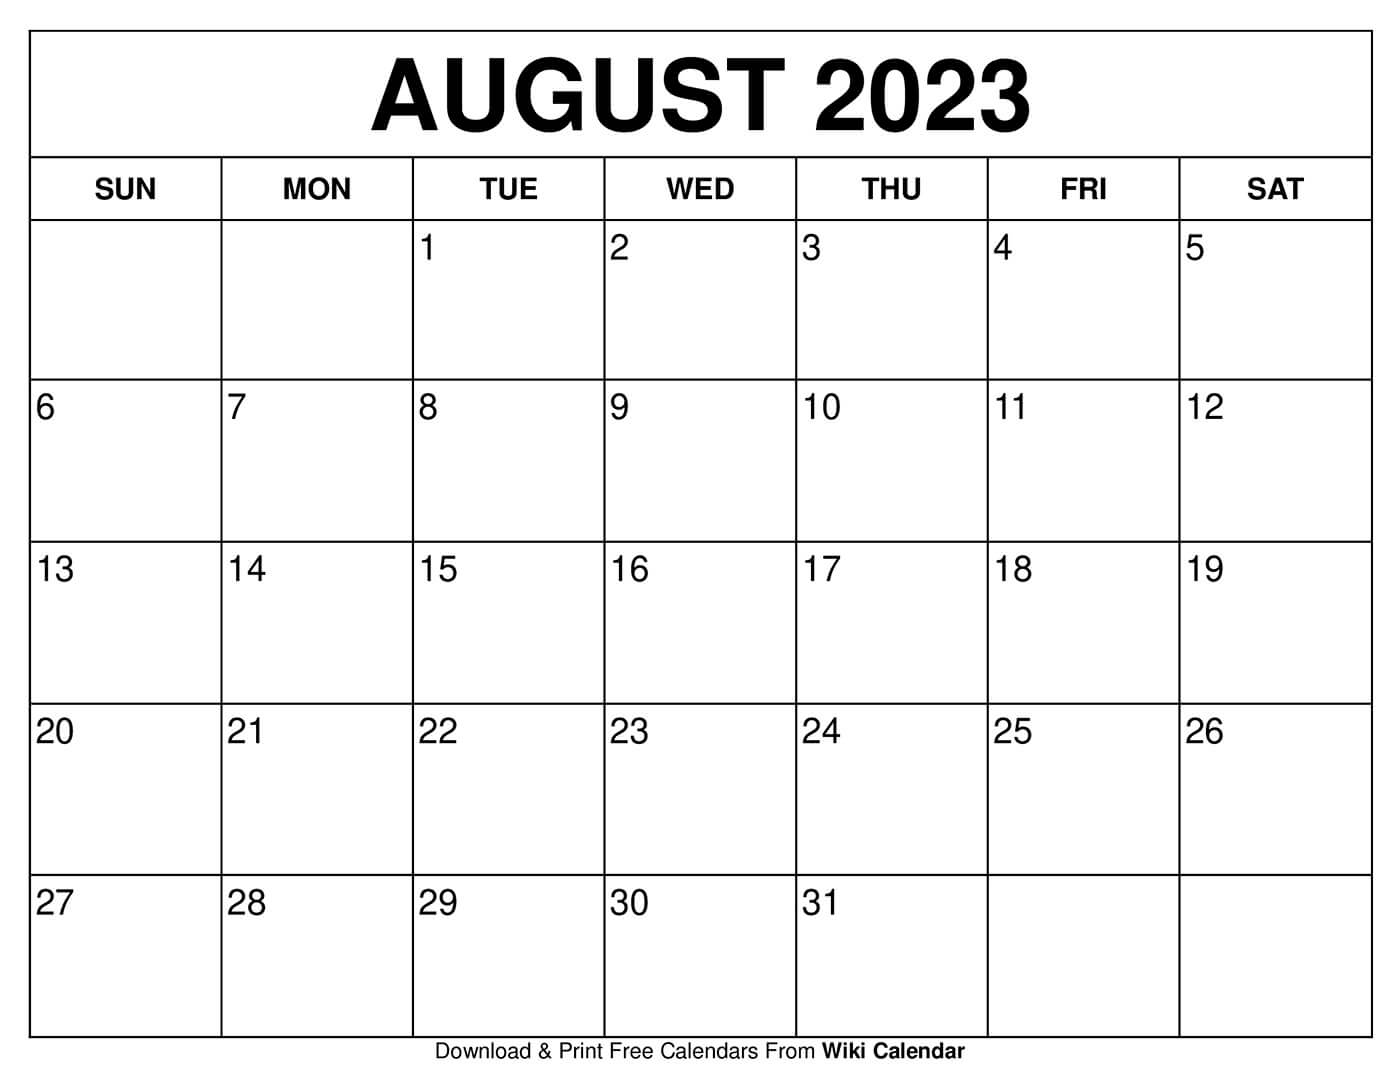 June July August 2022 Calendar Printable Free Printable August 2022 Calendars - Wiki Calendar